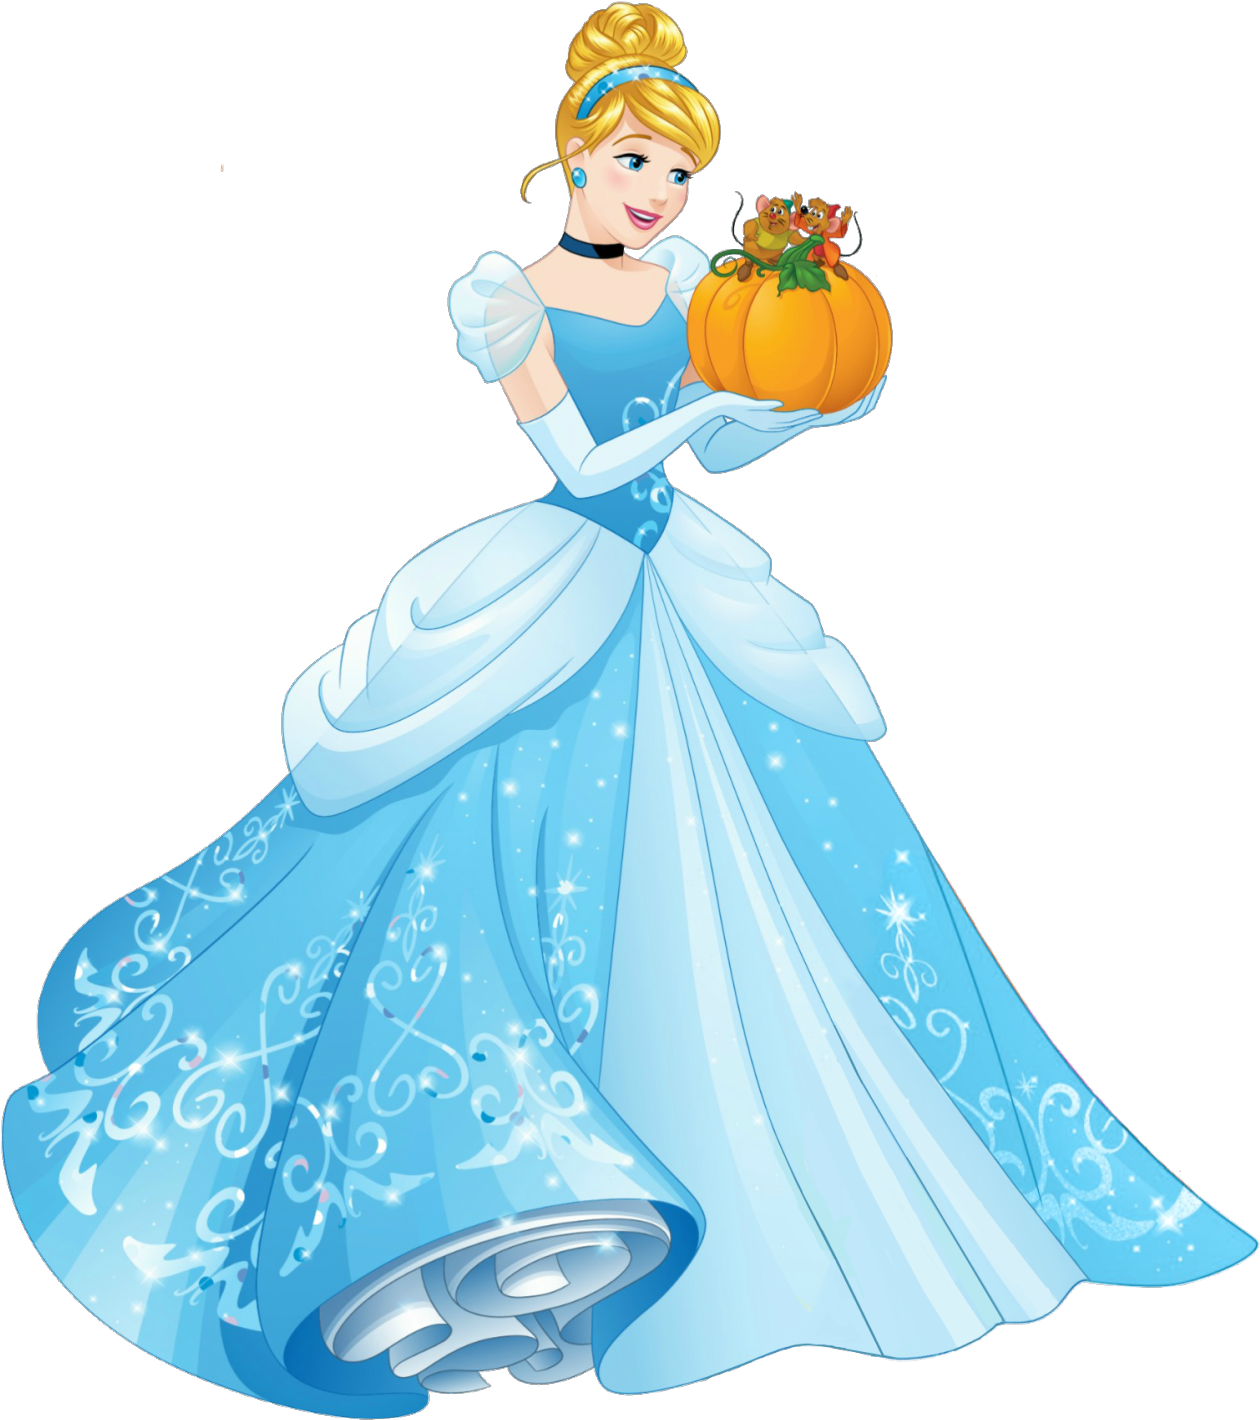 A Cartoon Of A Cinderella Holding A Pumpkin